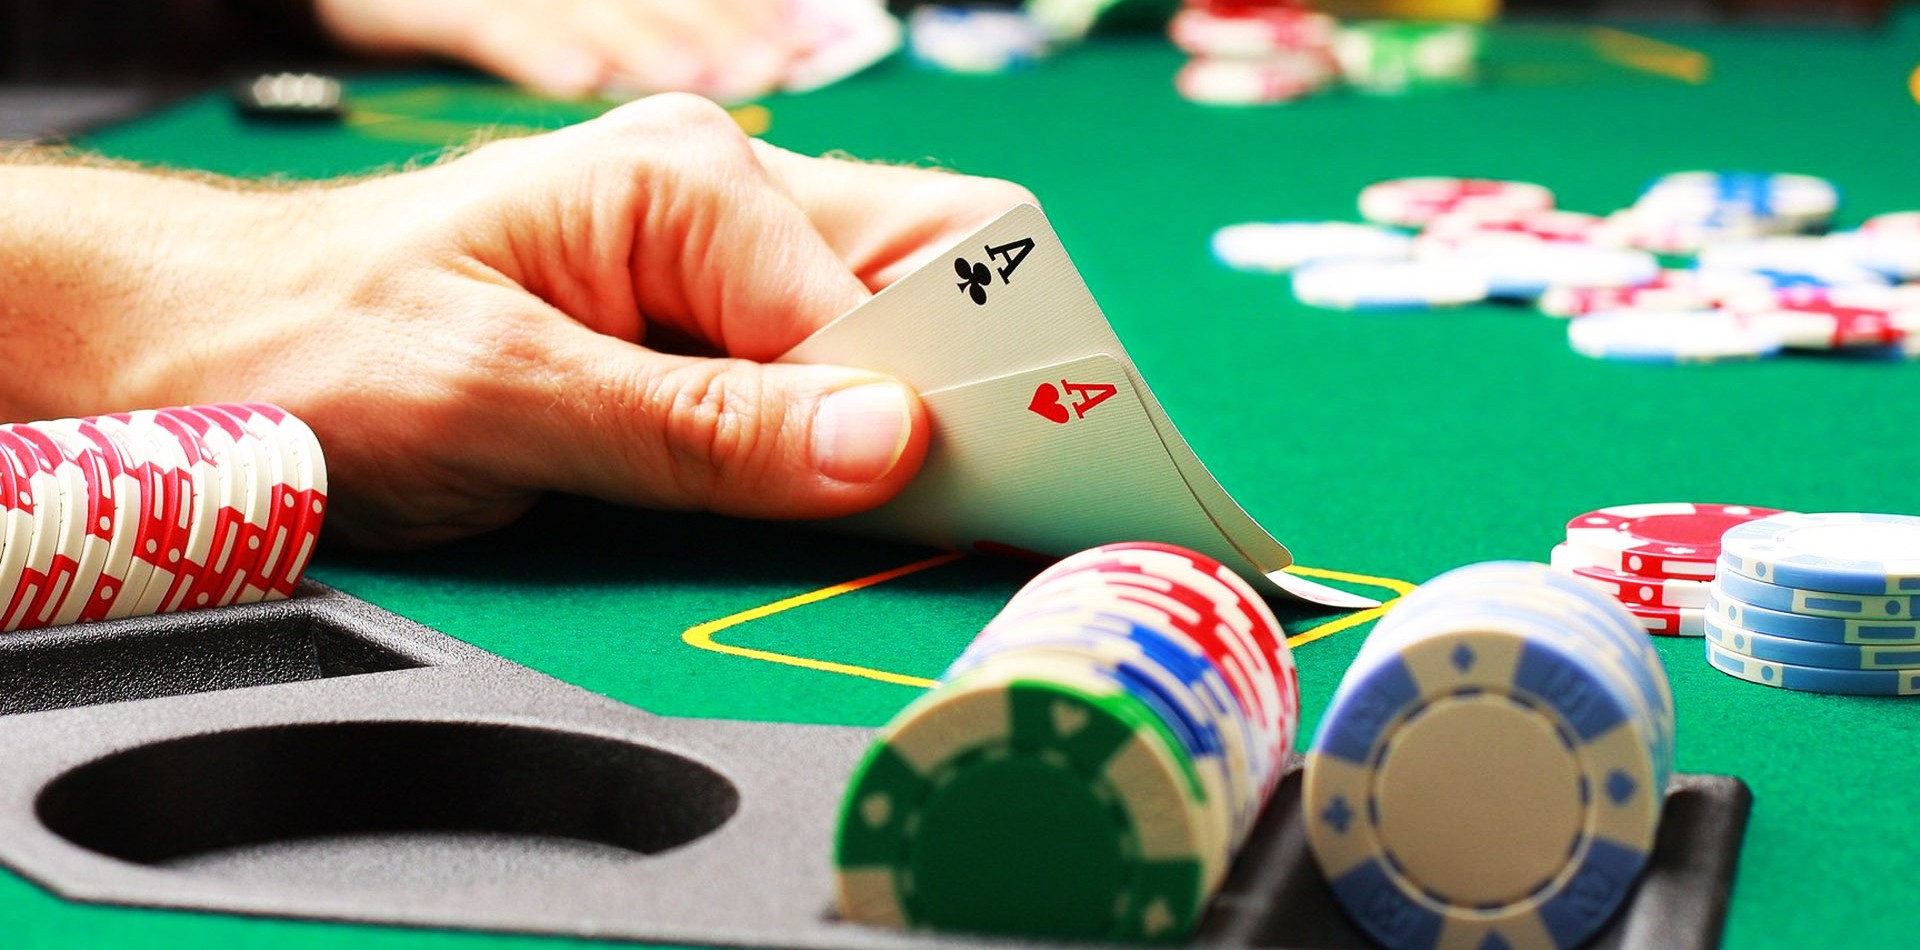 Poker - chơi bài không chỉ giải trí mà còn giúp kiếm về khoản tiền thưởng không nhỏ